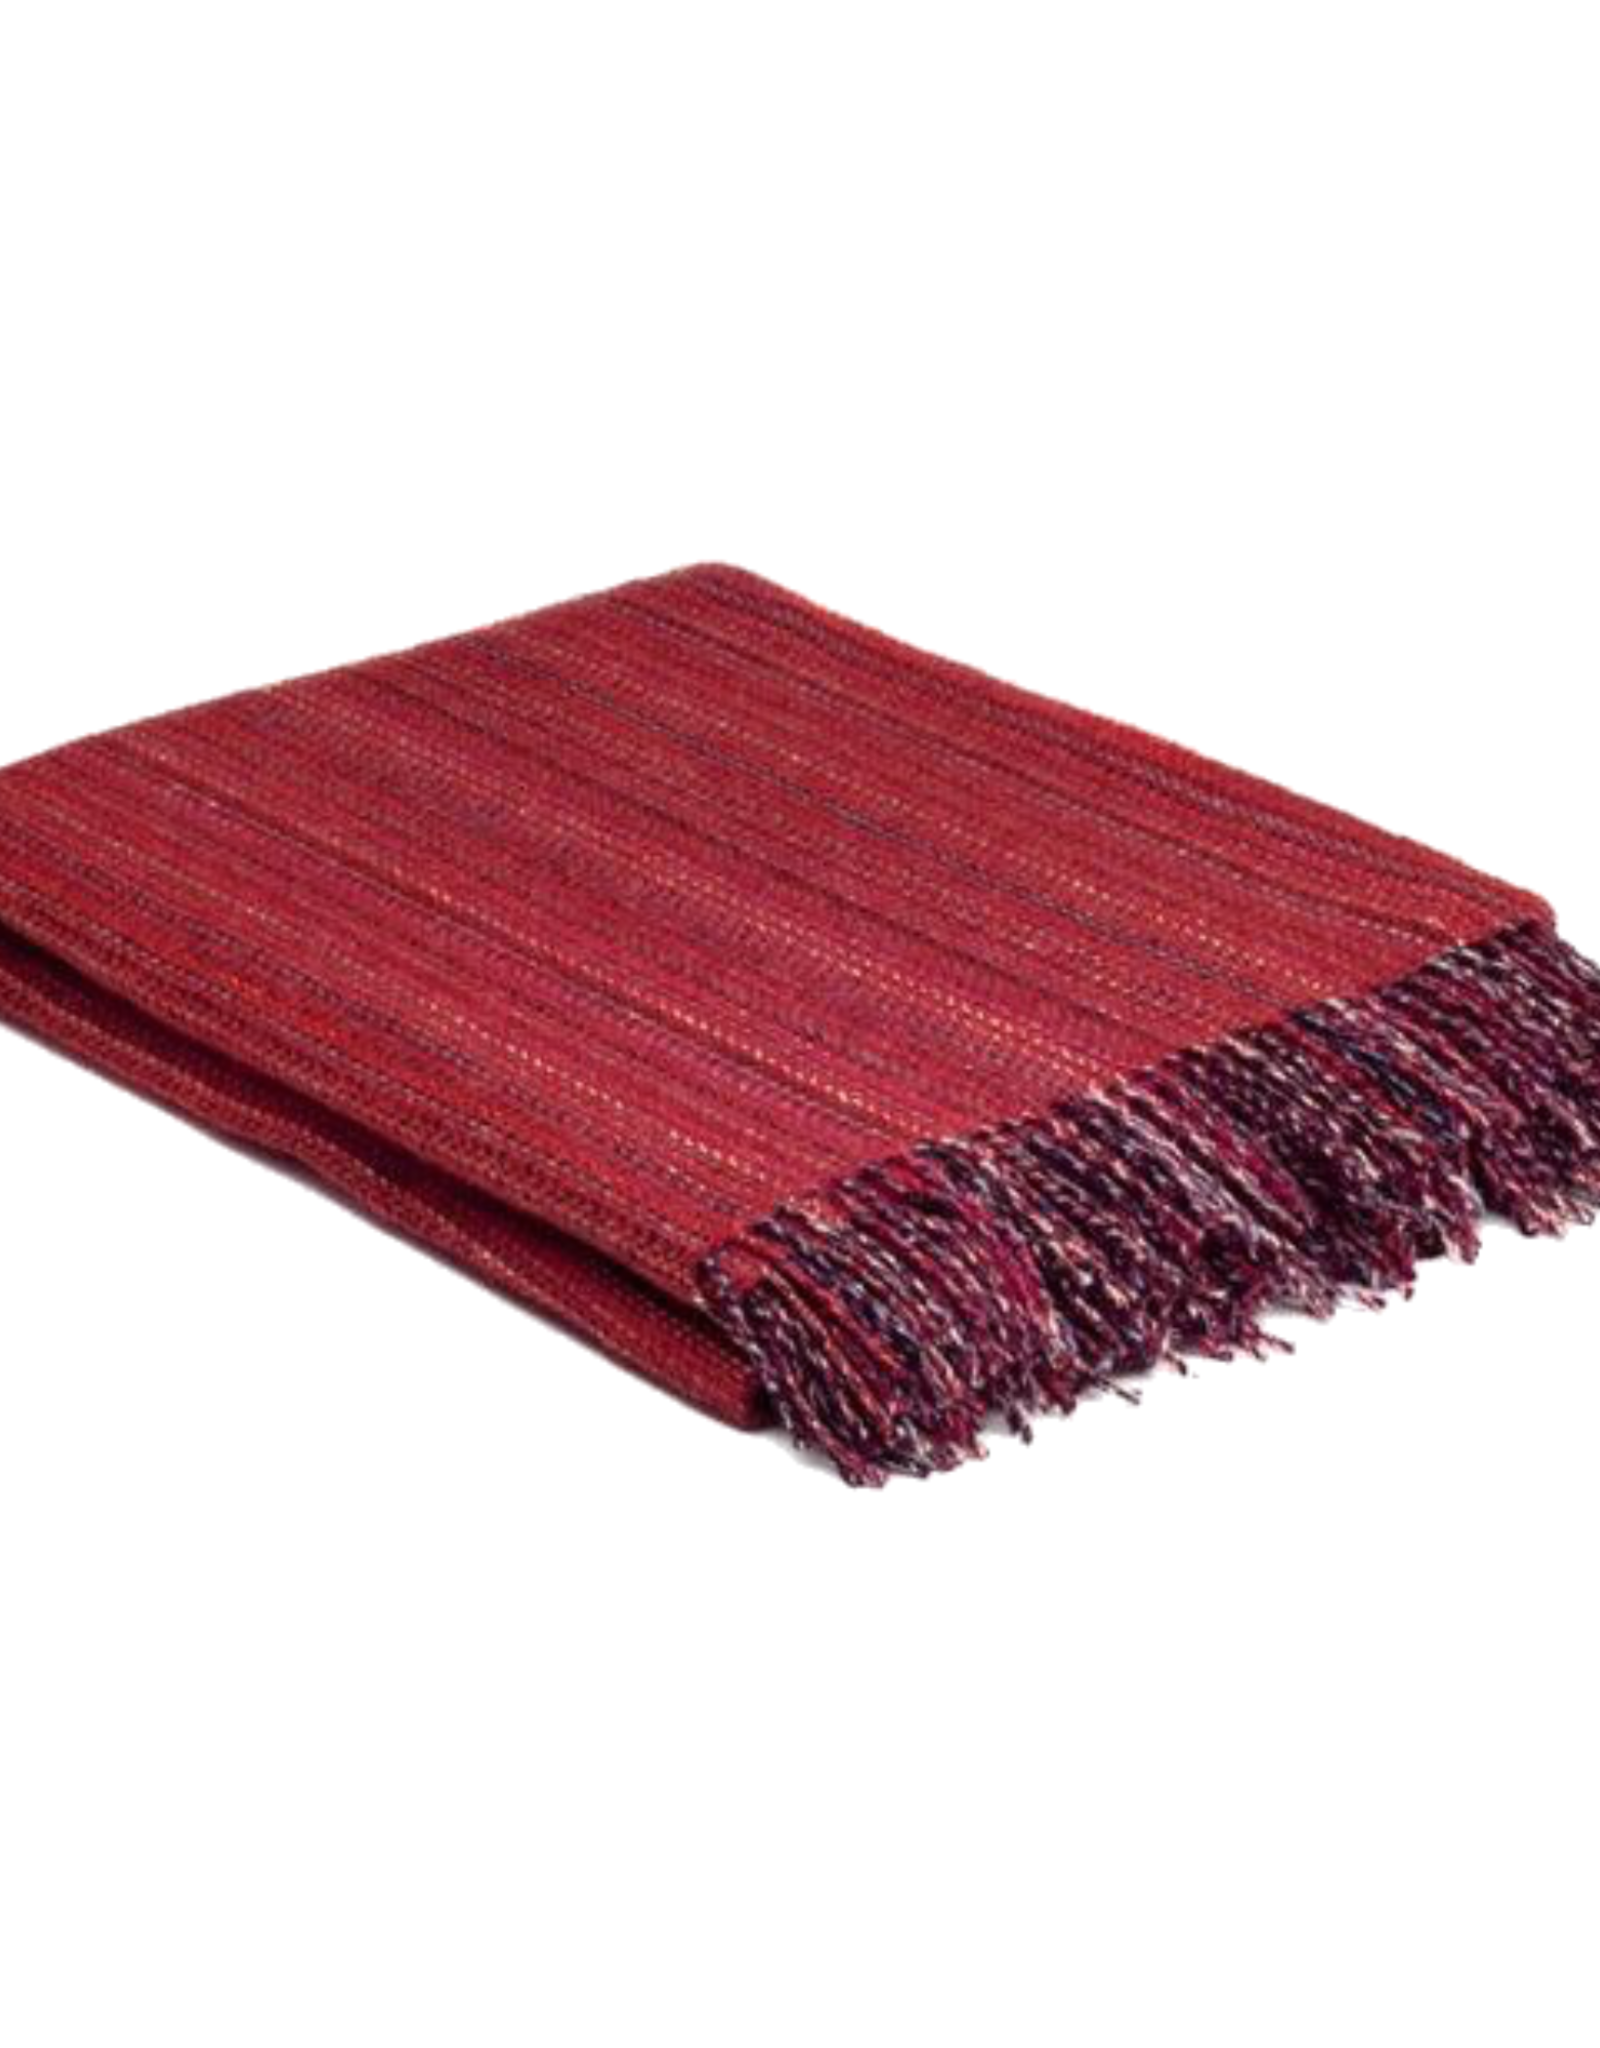 McNutt McNutt Wool Blanket - Red Tweed